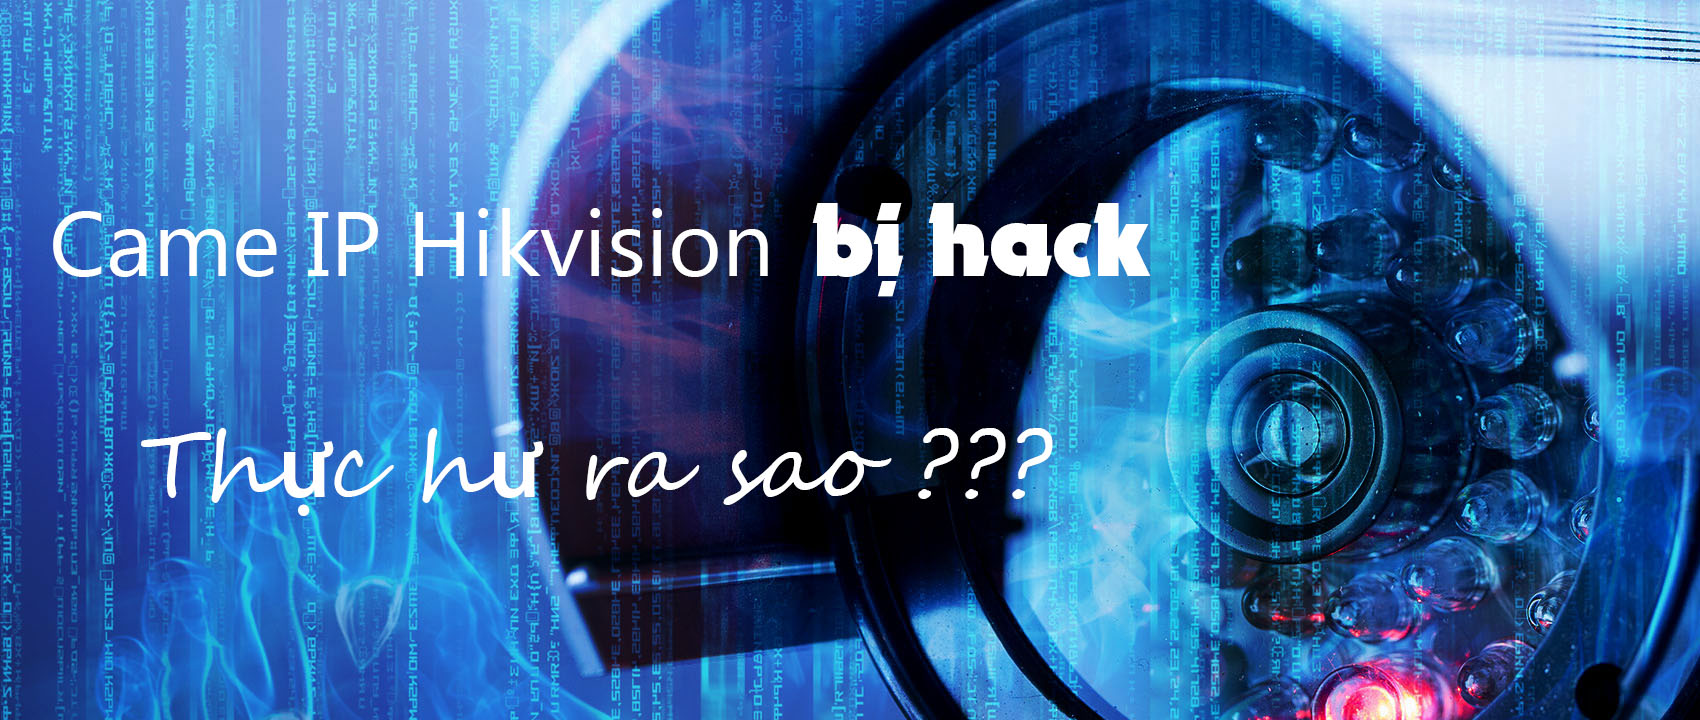 Camera Hikvision bị hack, thực hư ra sao?